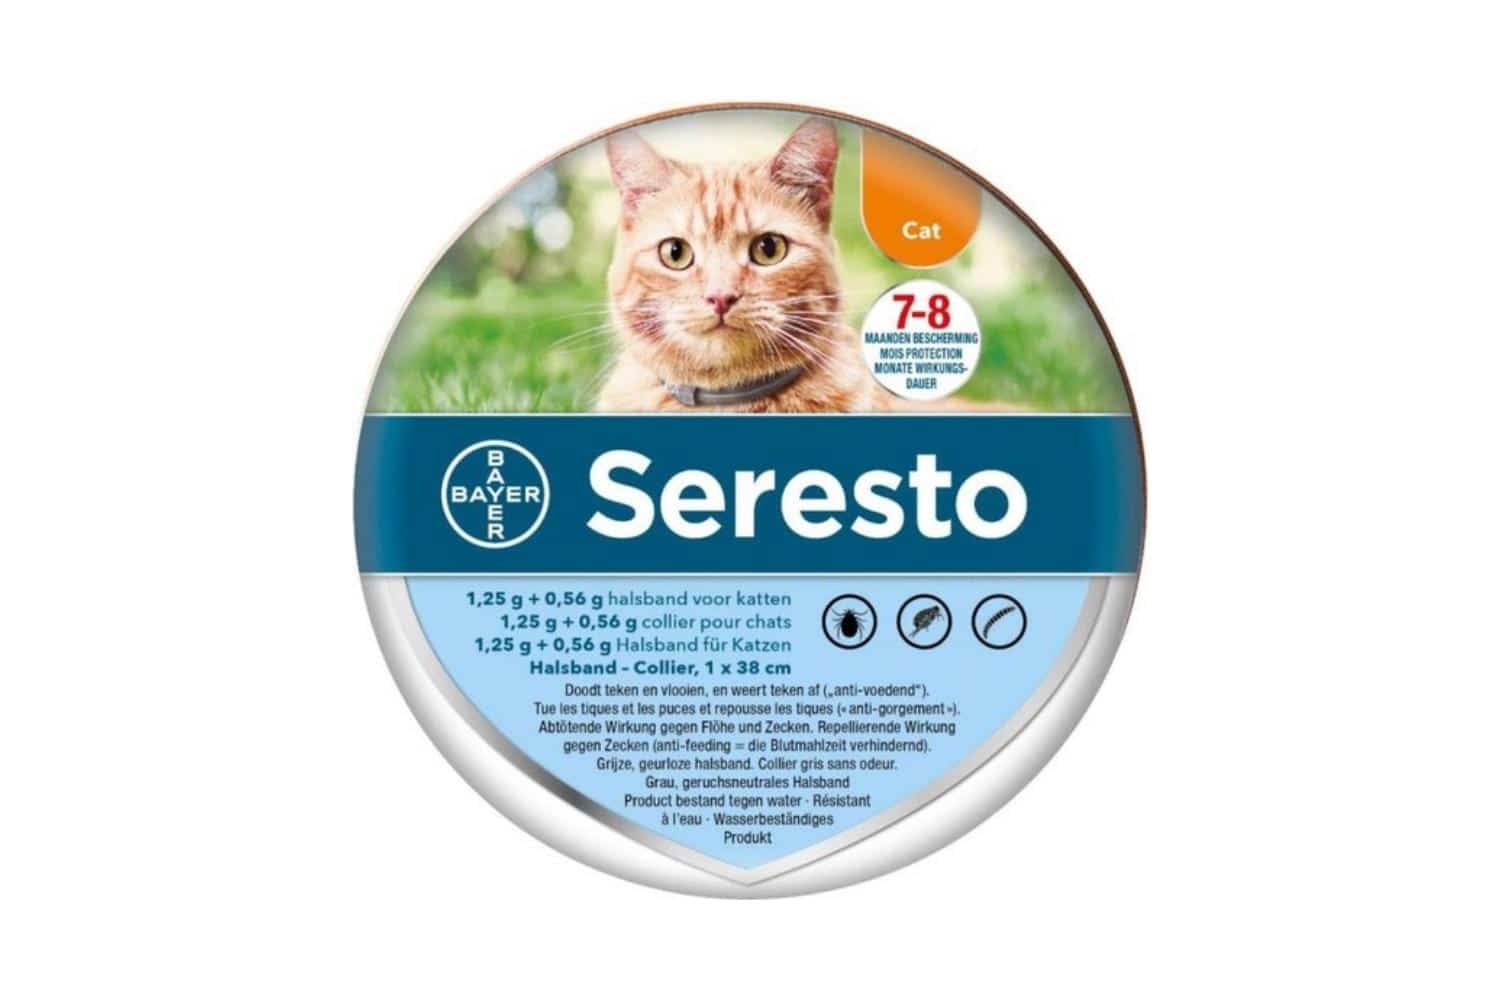 Ophef Mijnwerker schors Bayer Seresto Vlooien- en Tekenband kat online kopen? → Dierencompleet.nl